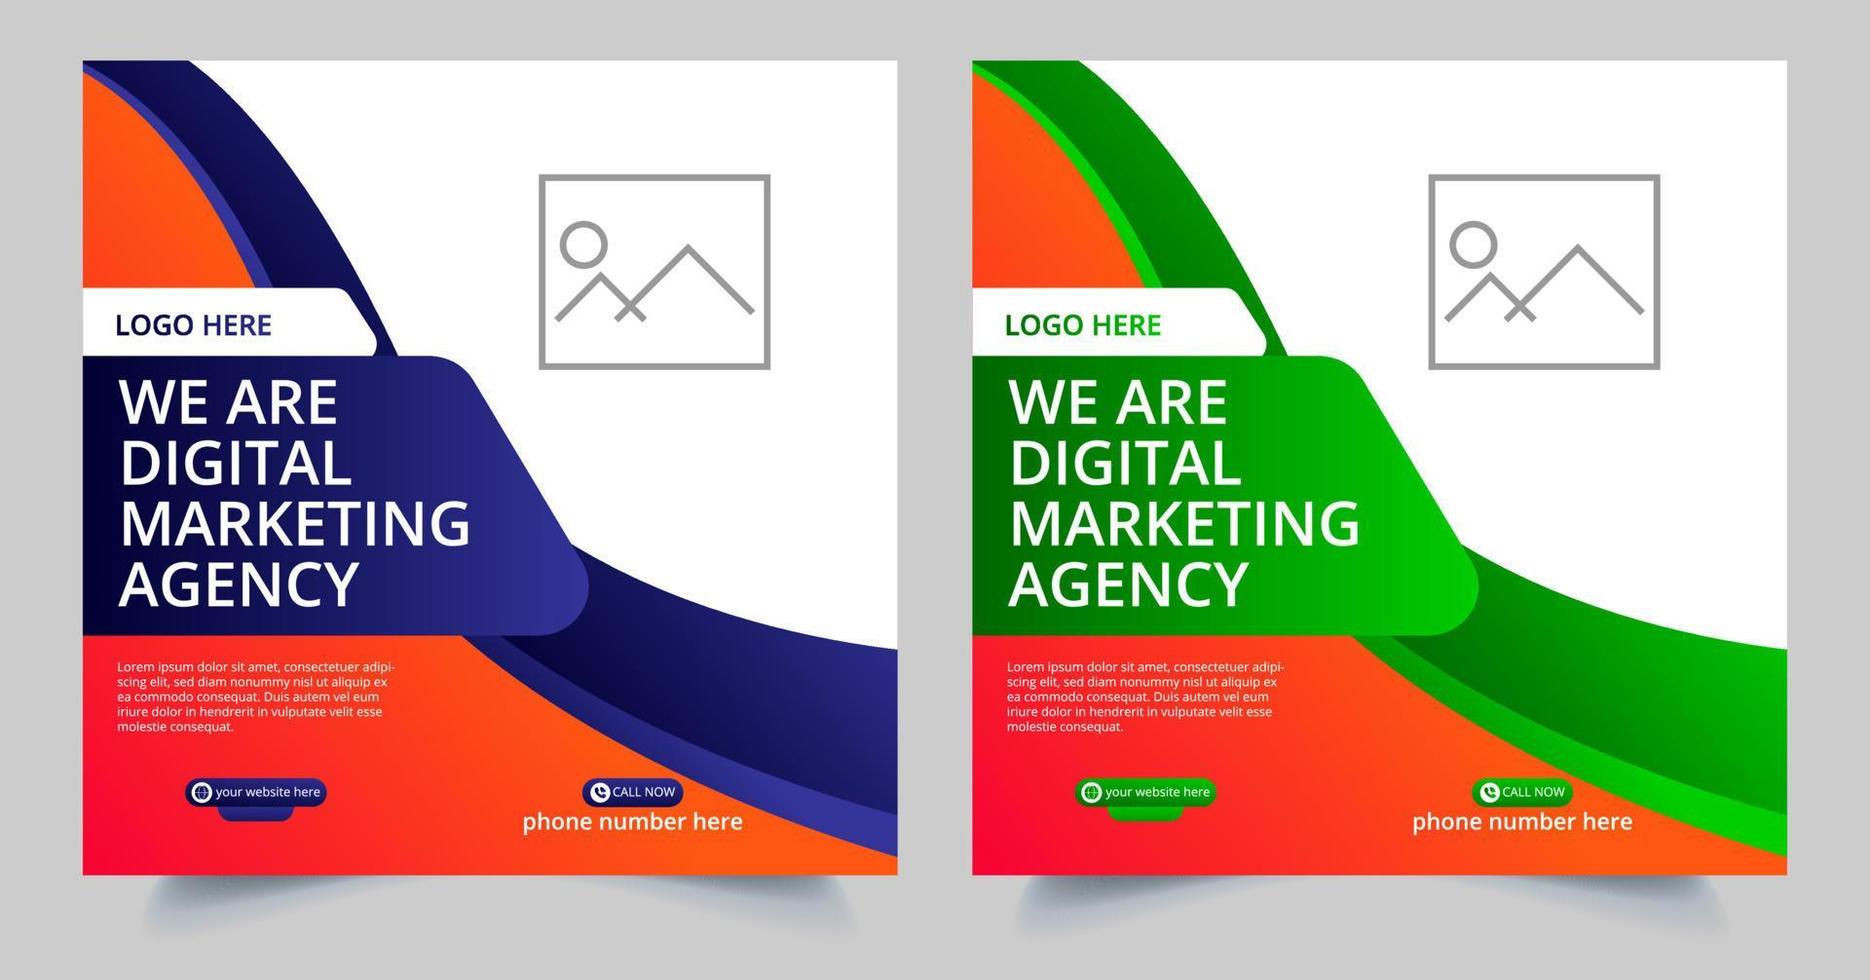 banner di marketing aziendale digitale per la progettazione di modelli di post sui social media vettore